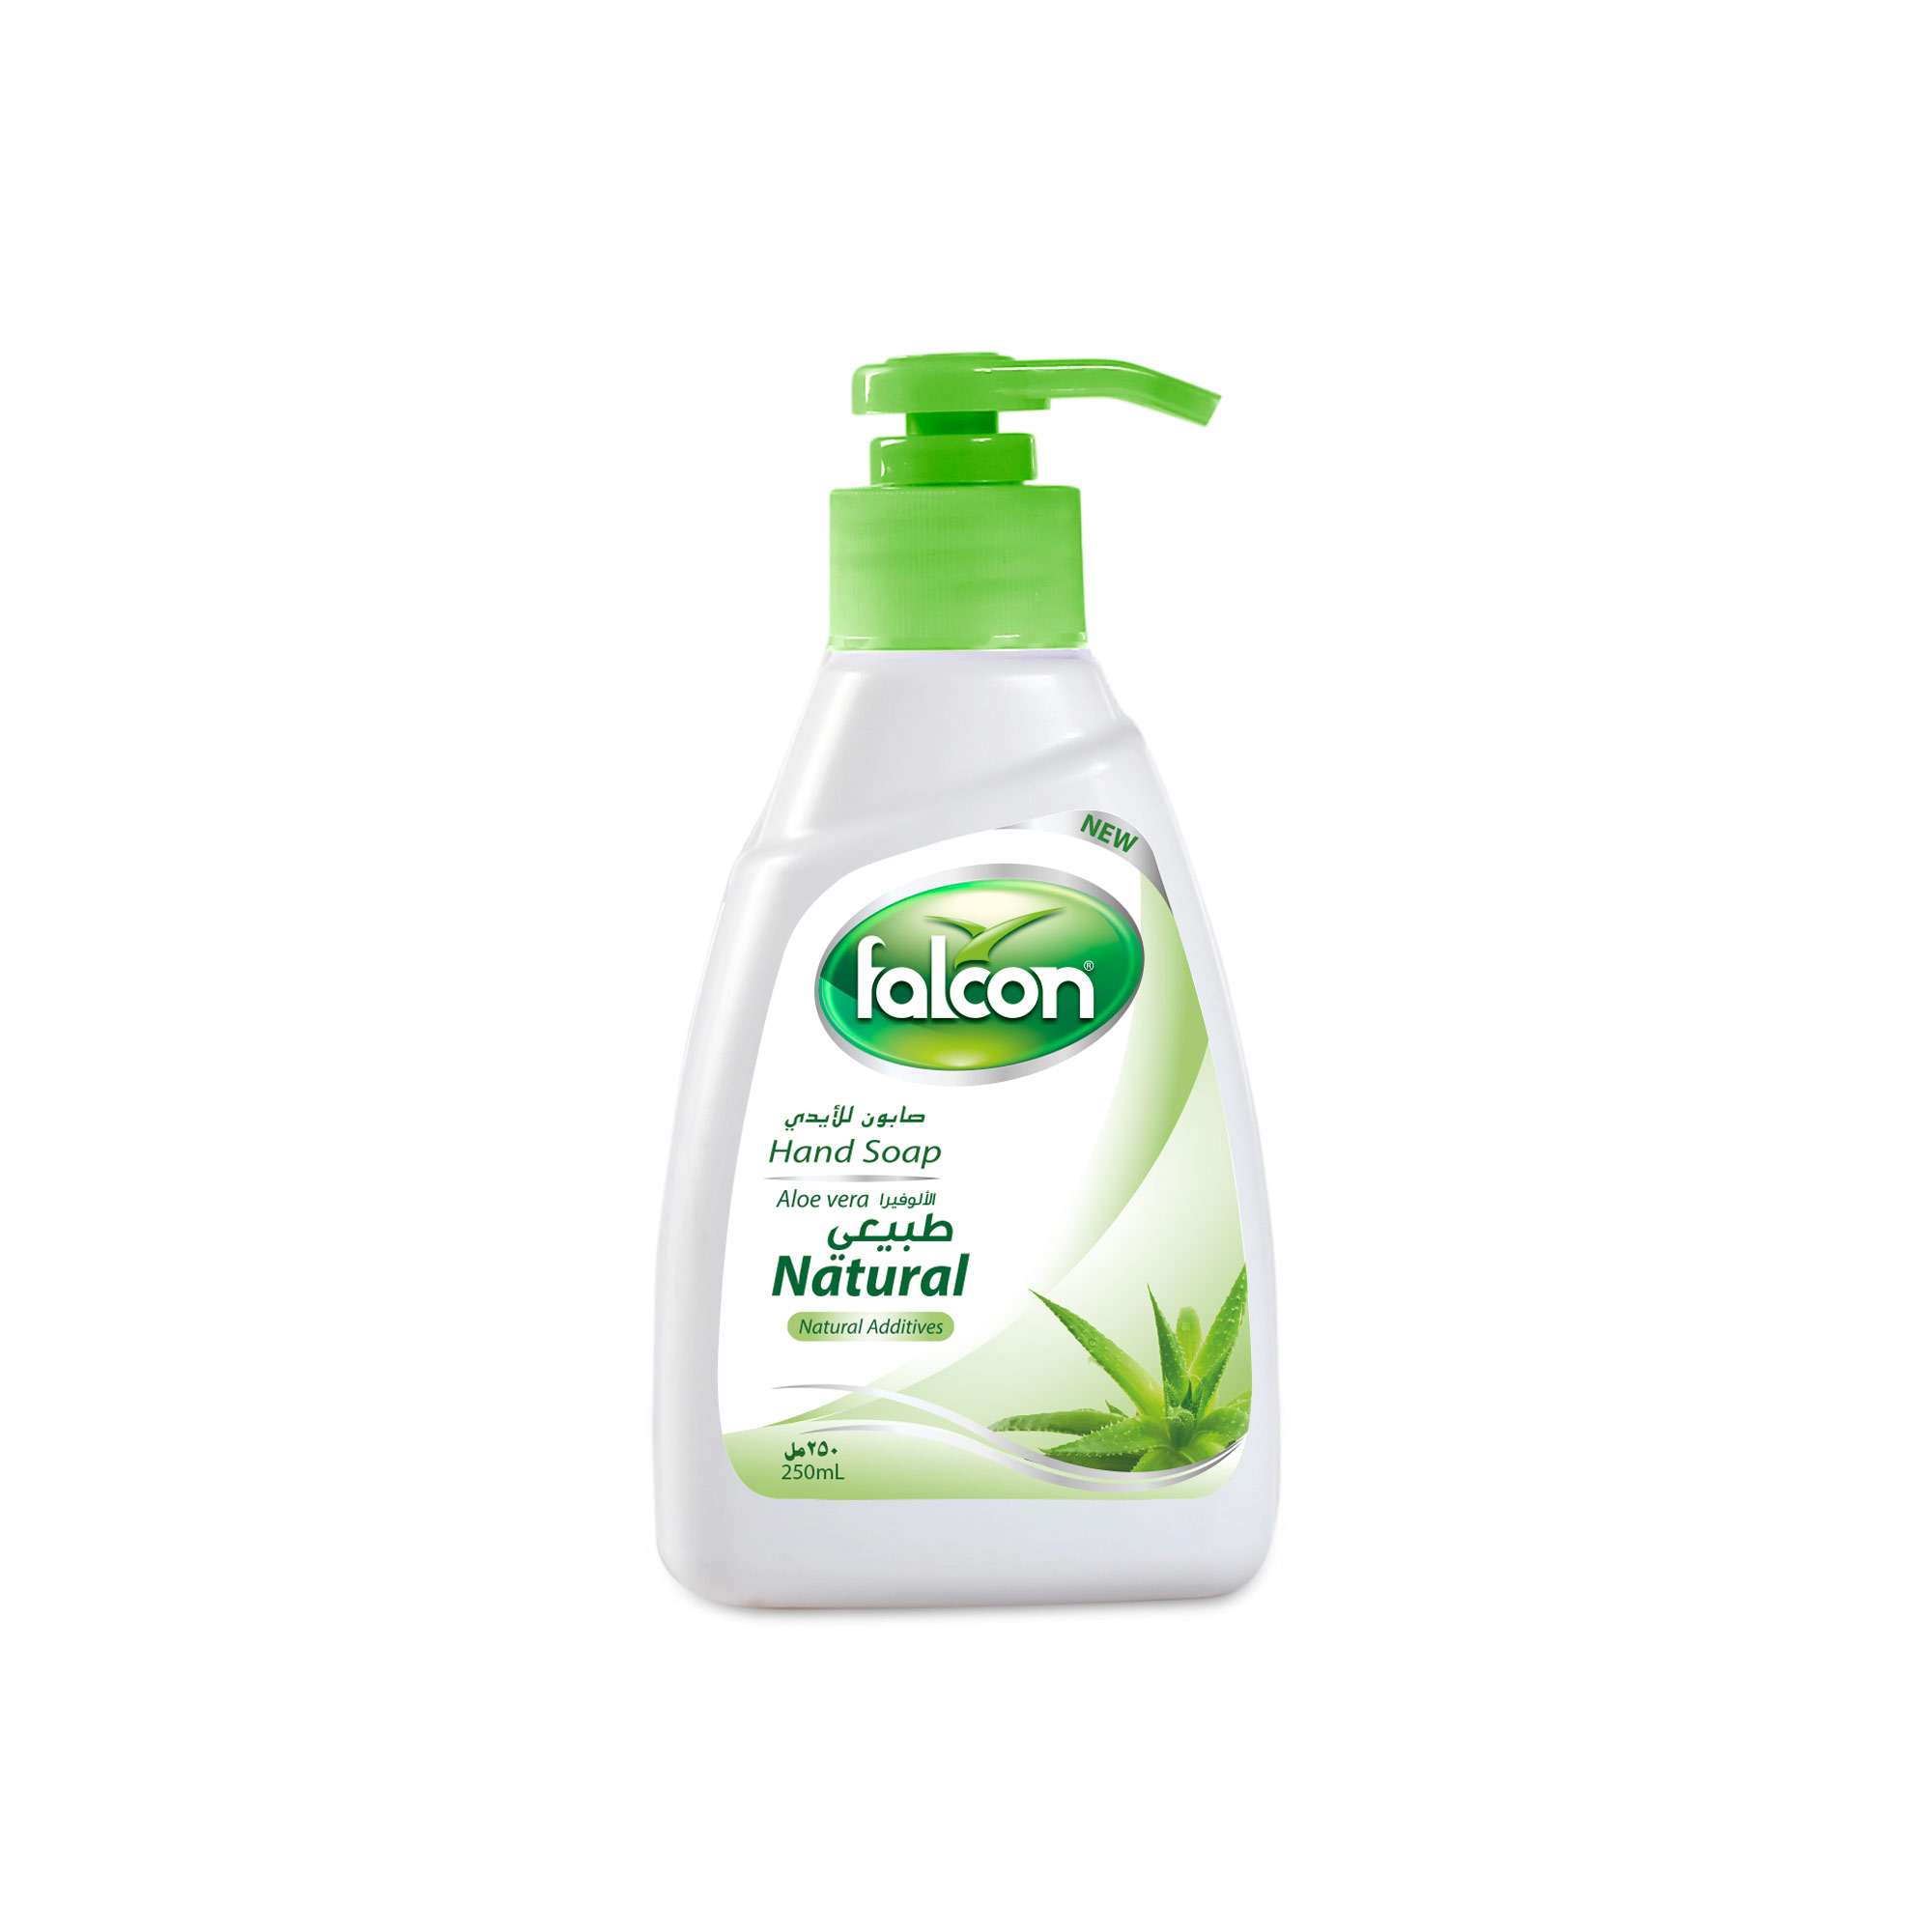 Falcon Natural Hand Soap Liquid (Aloevera )